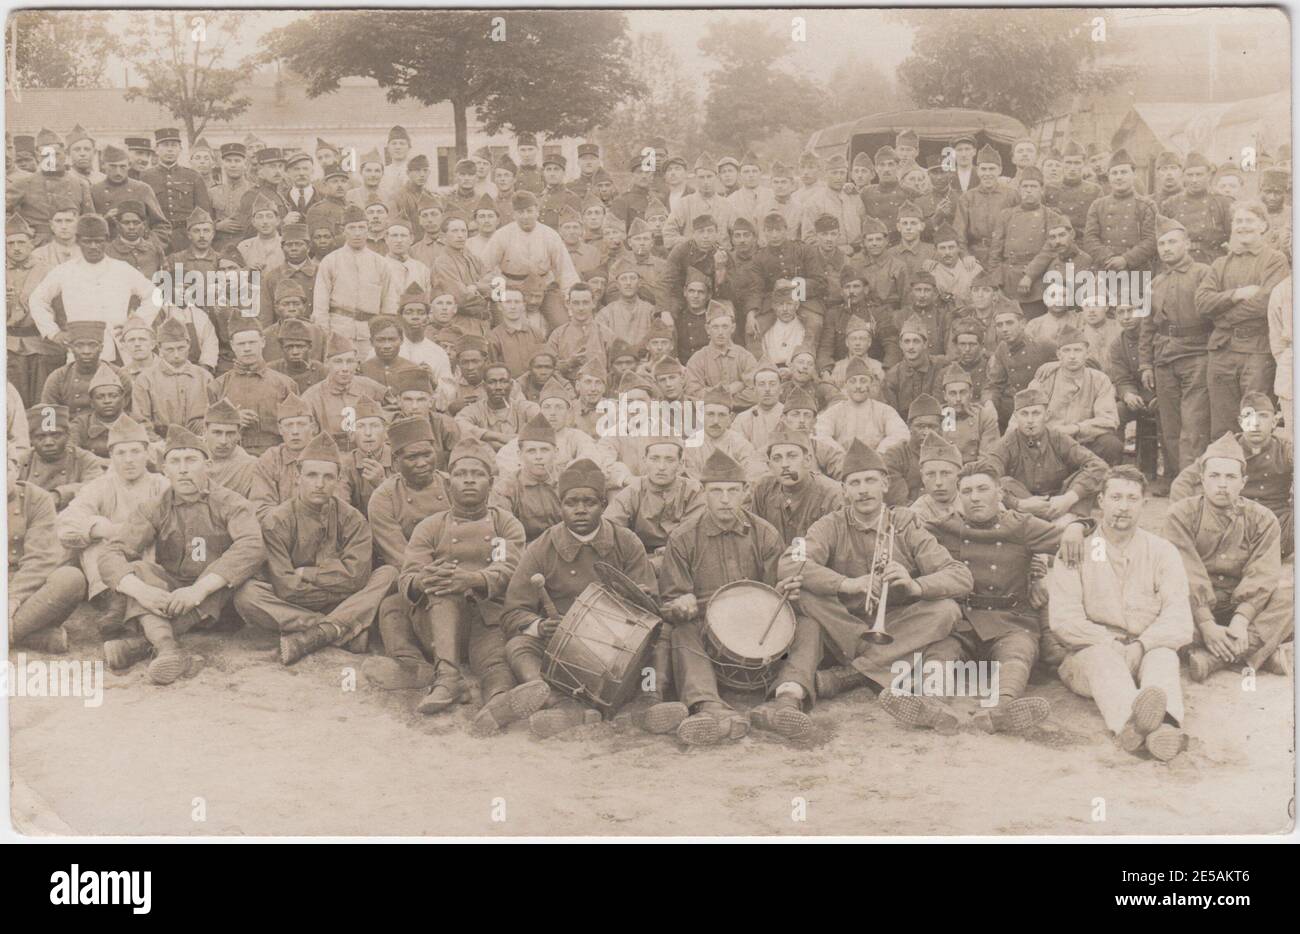 Un grand groupe de soldats français et africains réunis en camp pendant la première Guerre mondiale. À l'avant du groupe se trouvent trois hommes (deux blancs, un noir) avec des instruments de musique - une trompette, des tambours et une cymbale Banque D'Images